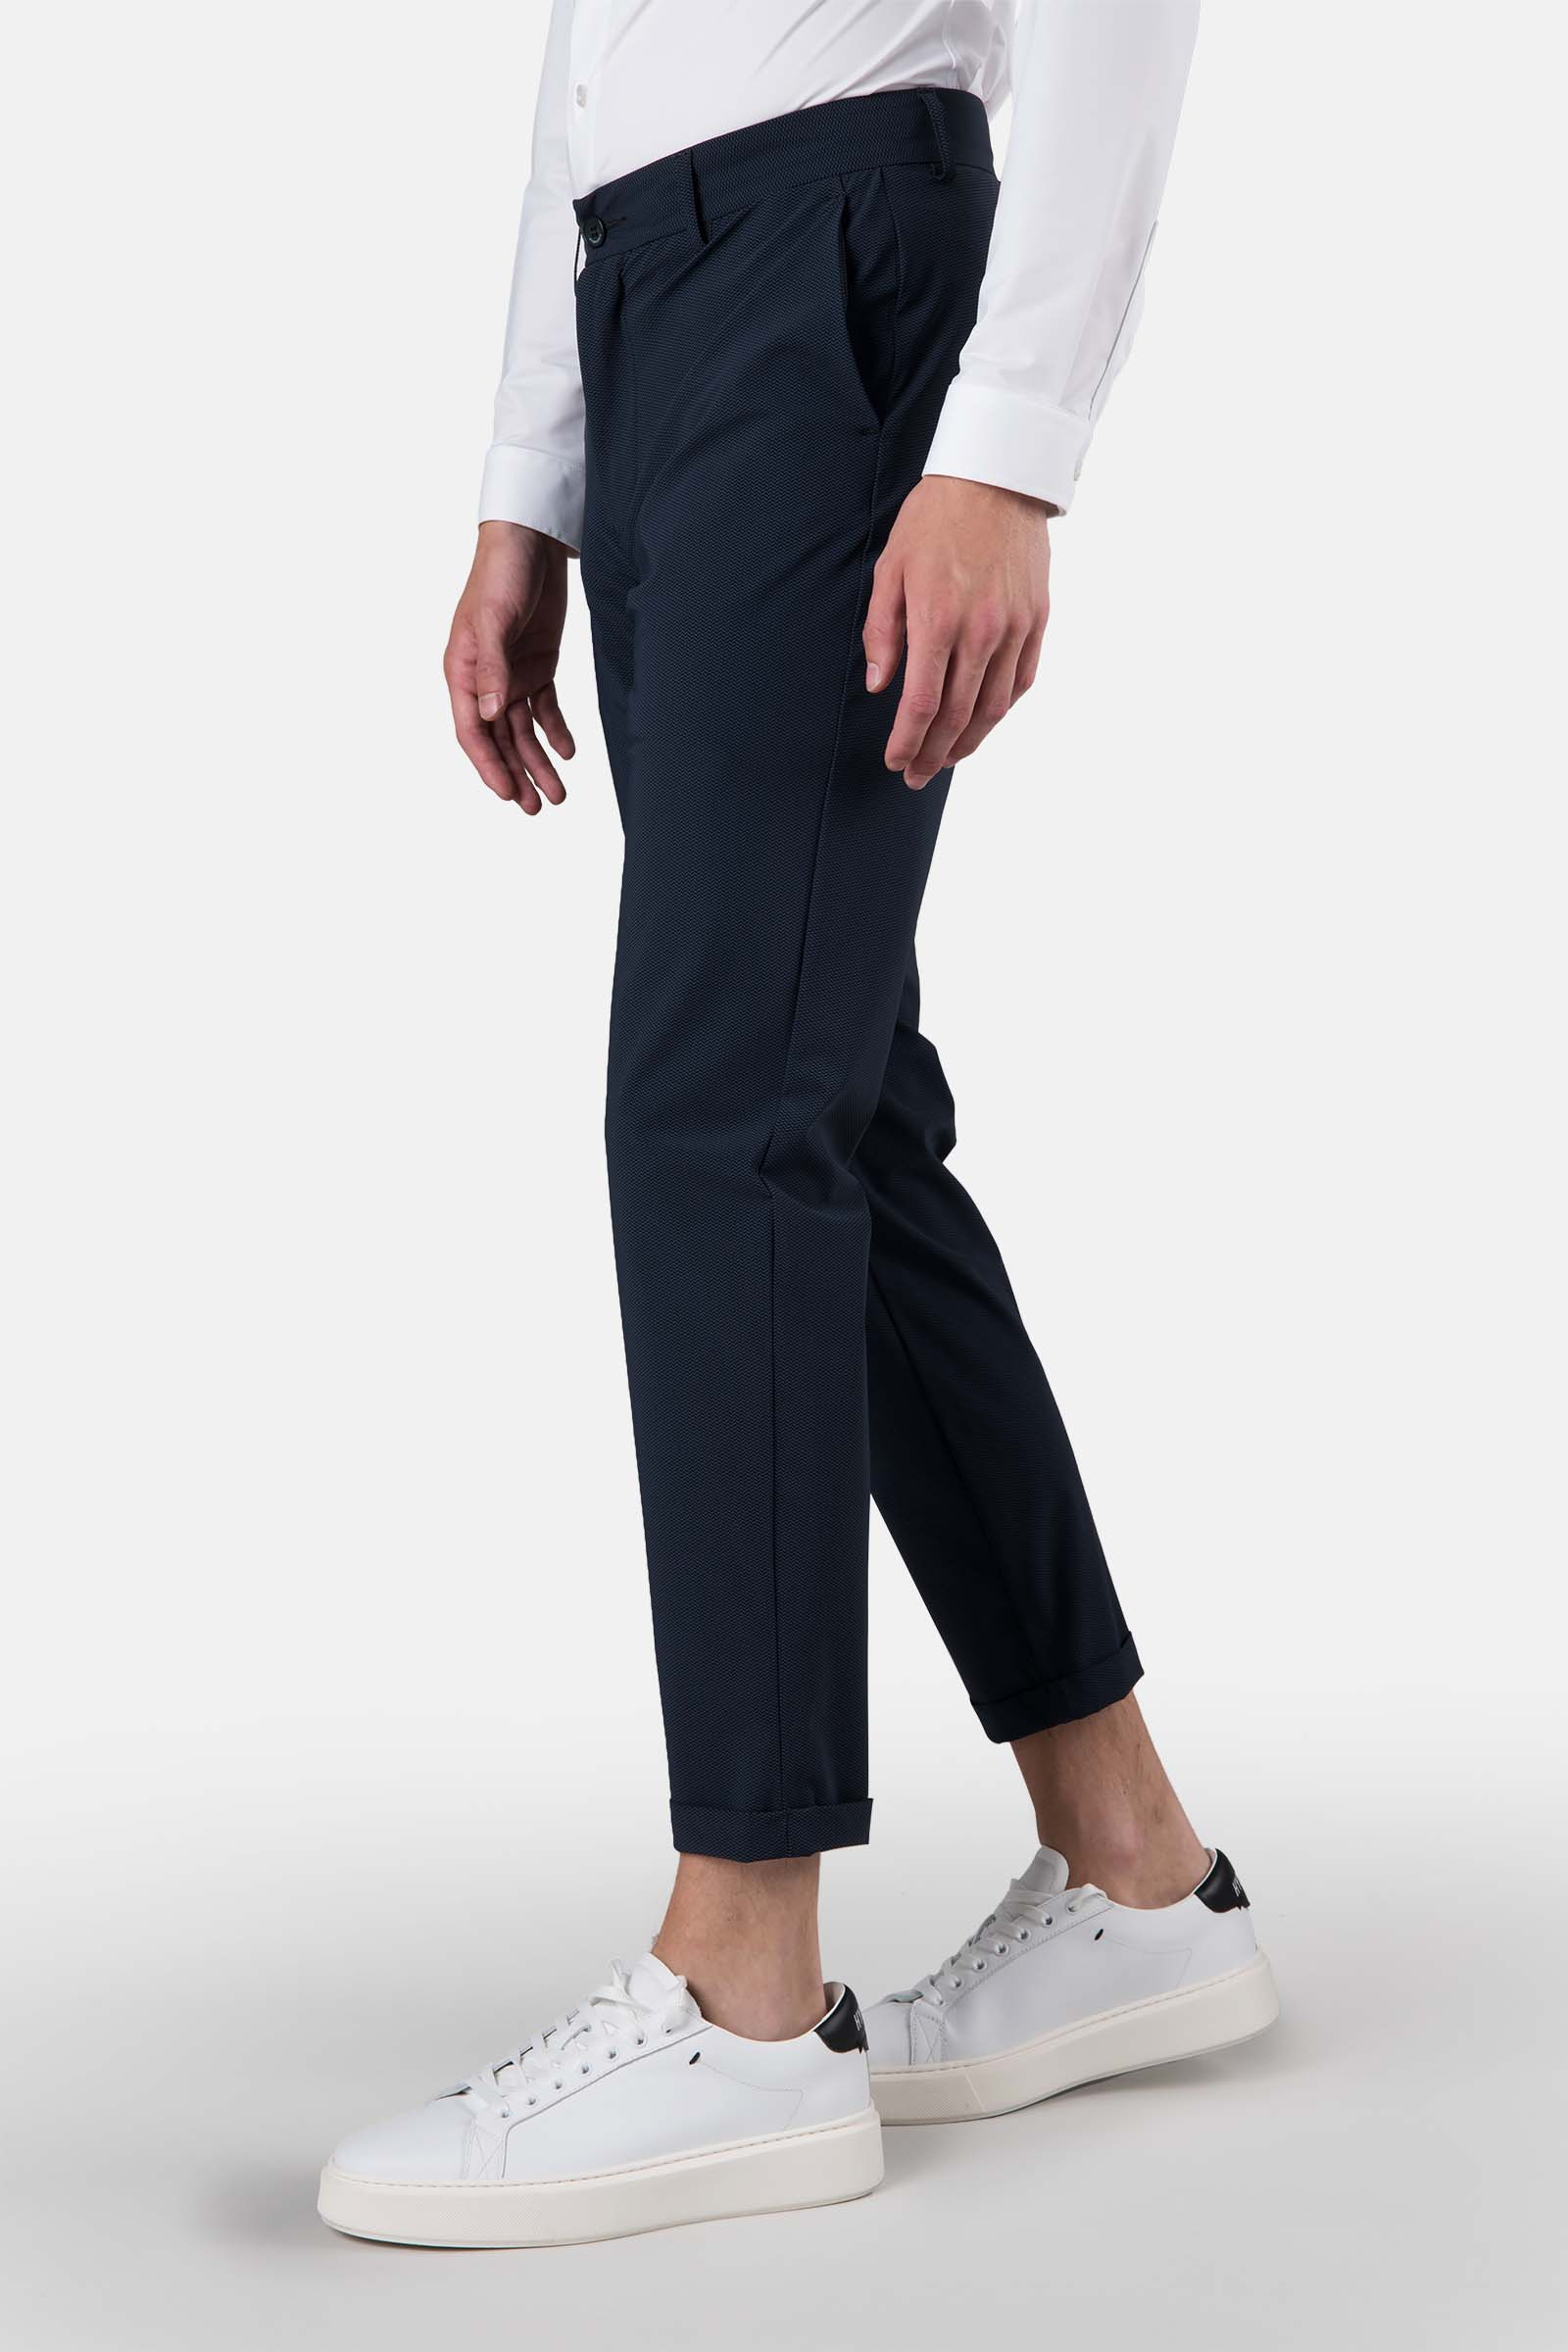 CLASSIC PANTS - BLUE - Hydrogen - Luxury Sportwear